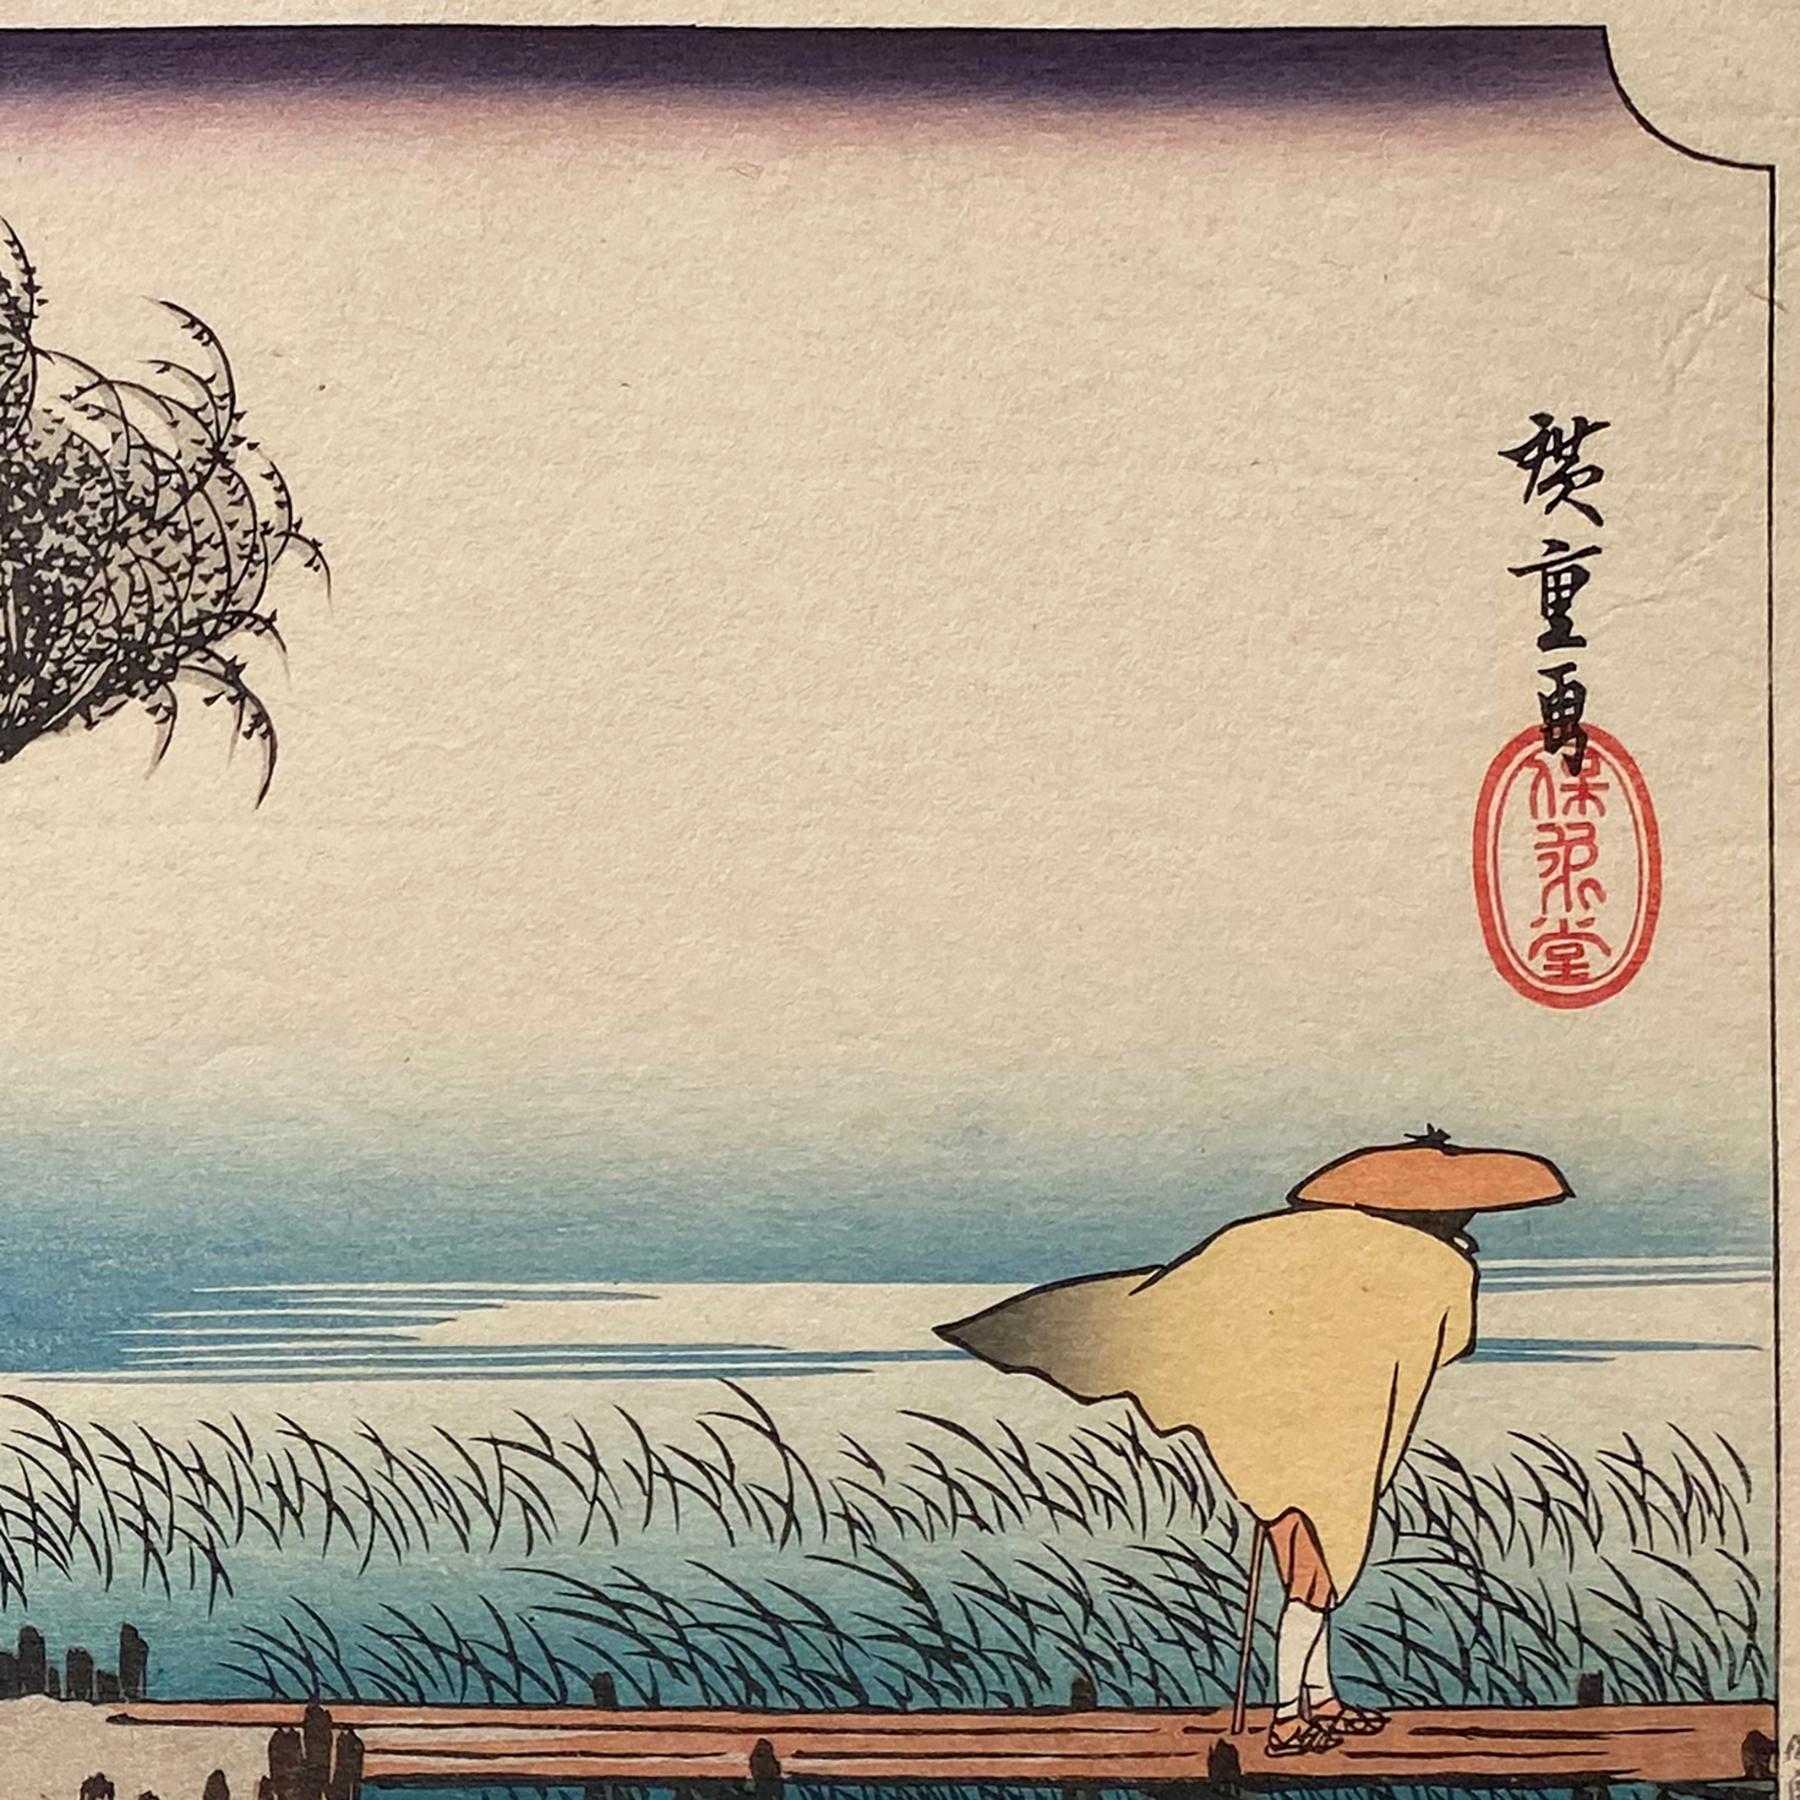 'Winds at Yokkaichi', After Utagawa Hiroshige 歌川廣重, Ukiyo-e Woodblock, Tokaido - Print by Utagawa Hiroshige (Ando Hiroshige)